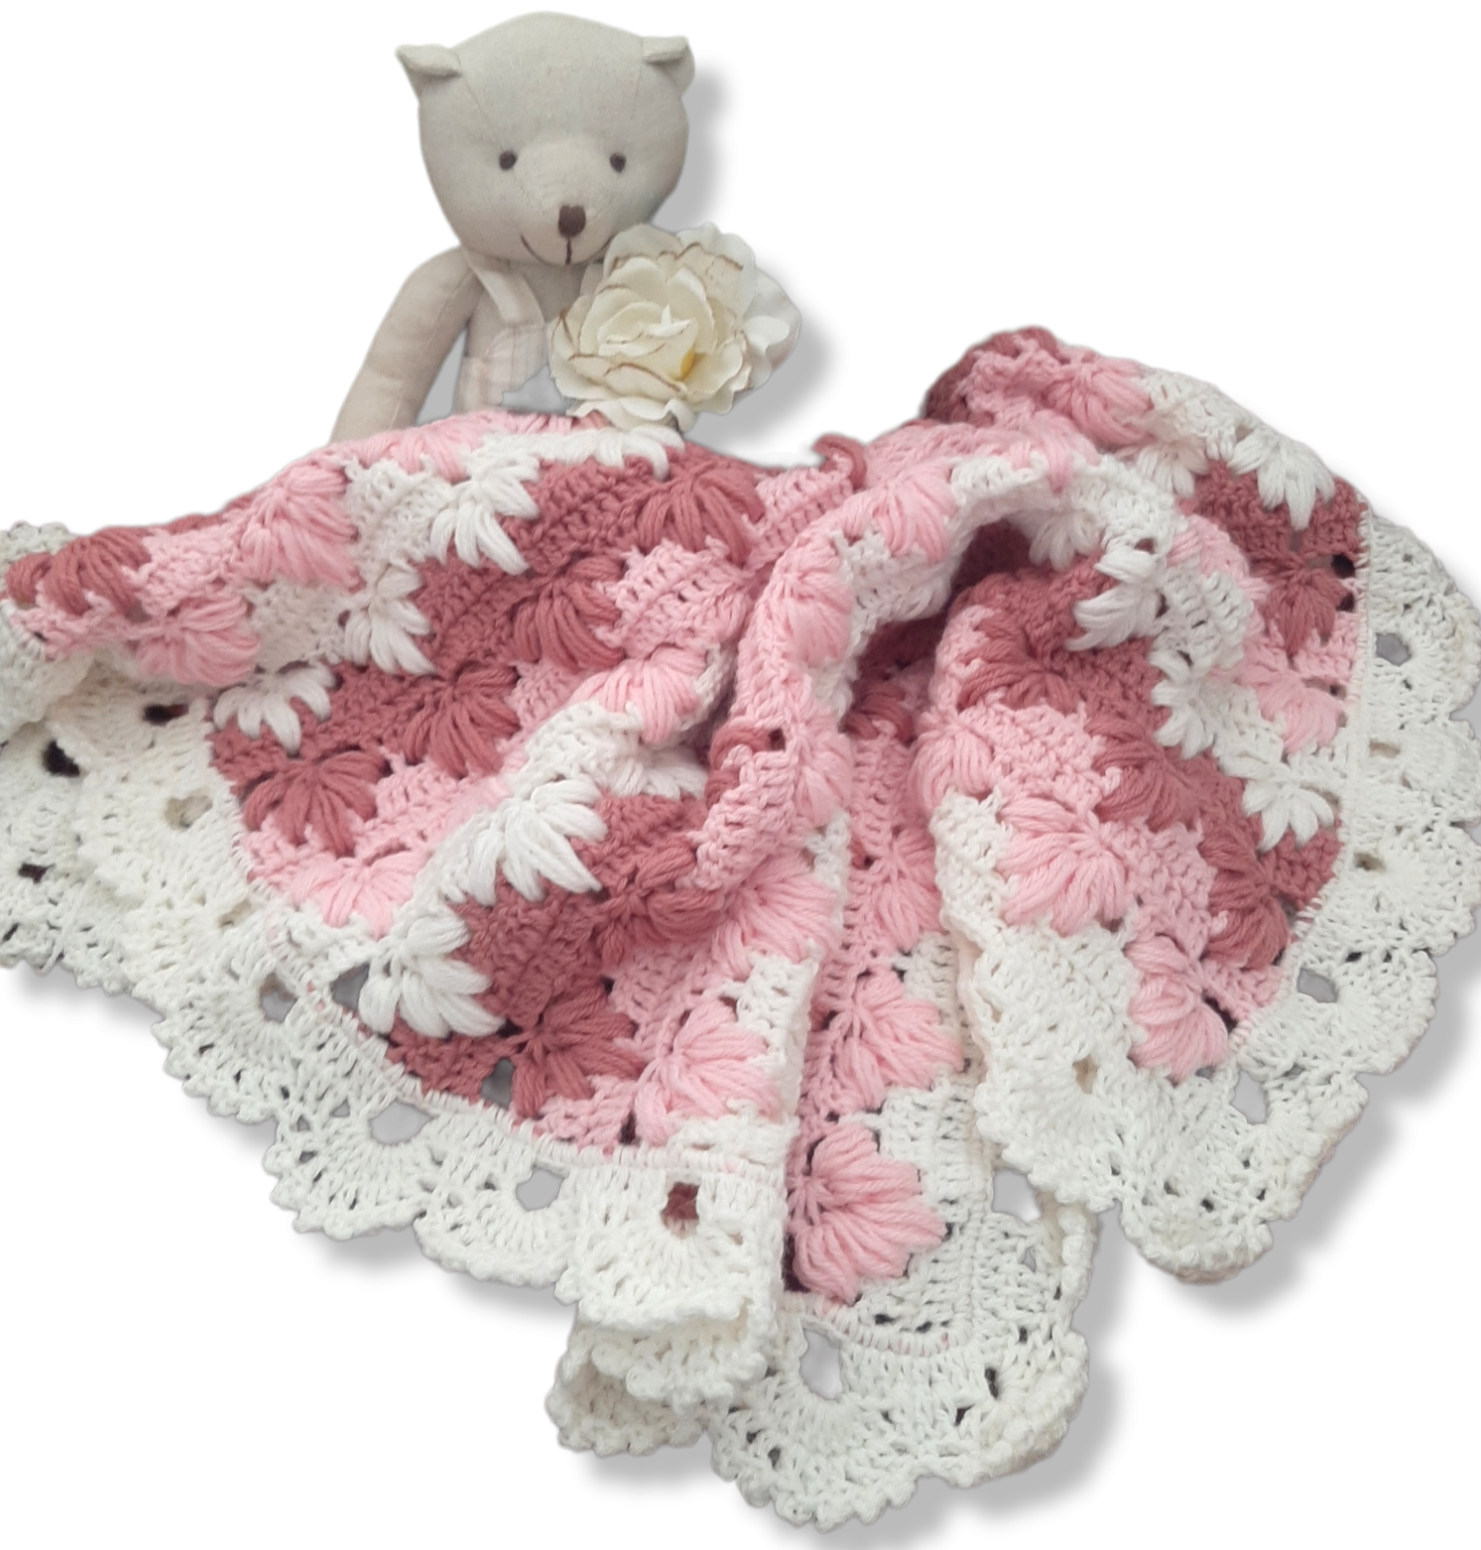 Copertina neonata lana bianco rosa realizzata a mano all'uncinetto